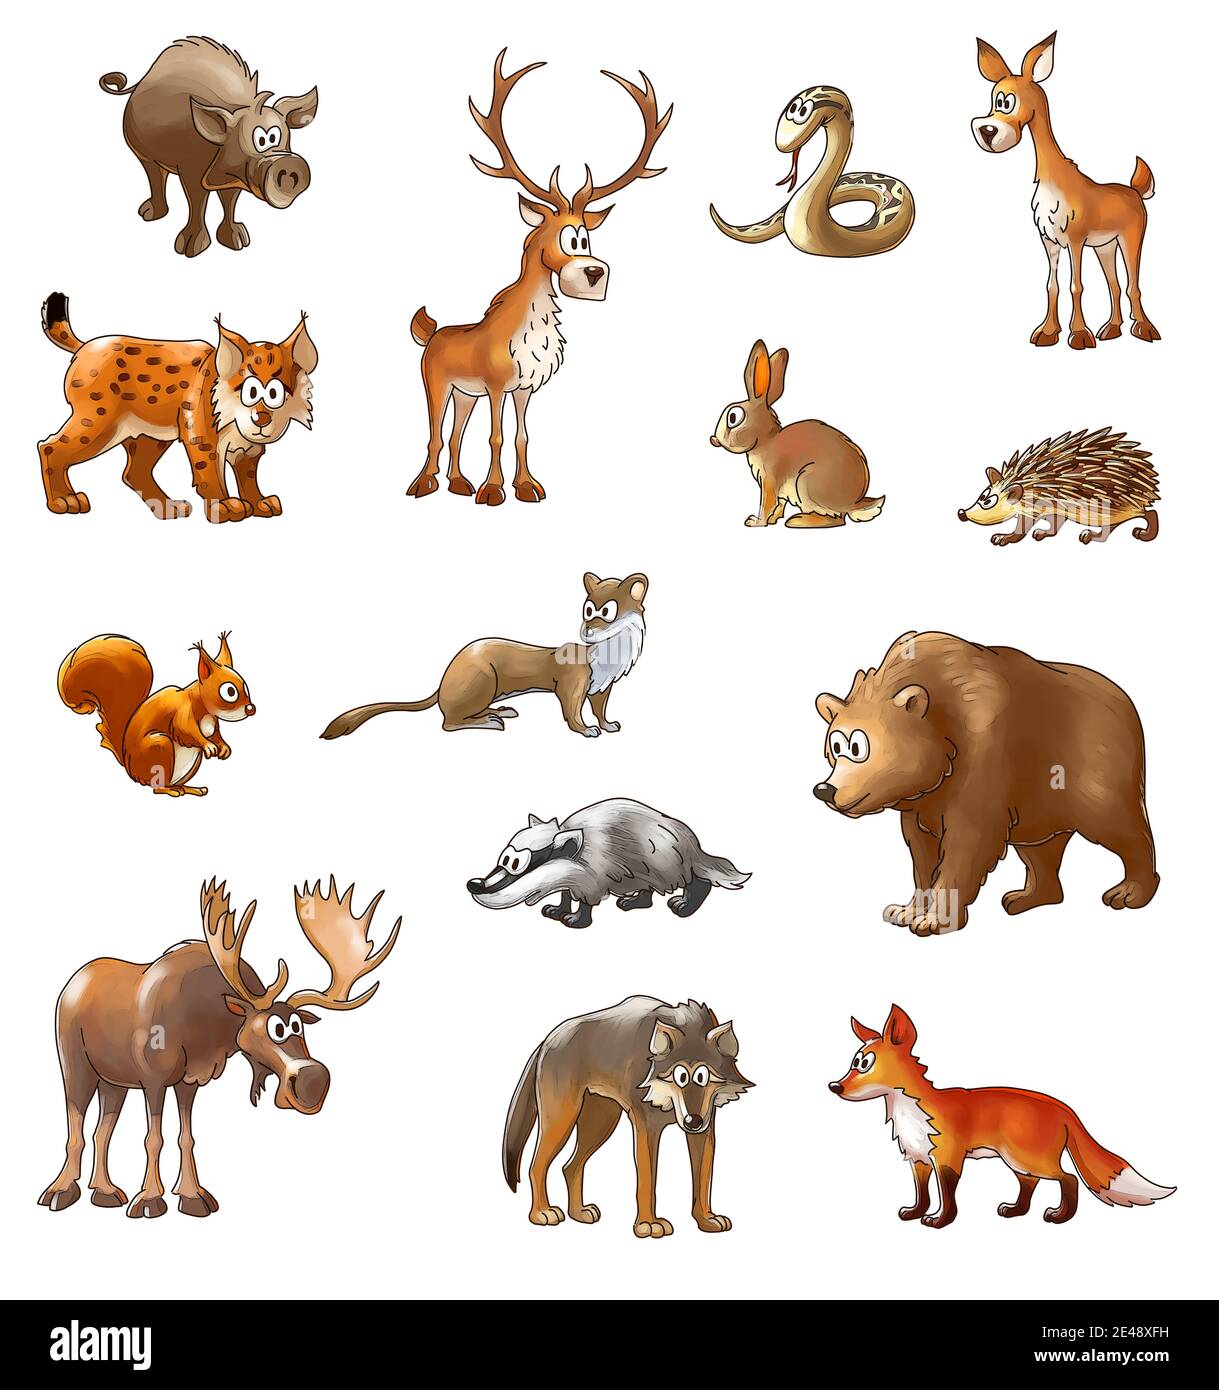 ensemble d'animaux en bois sauvage, animaux de dessin animé de couleur sur un fond blanc Banque D'Images